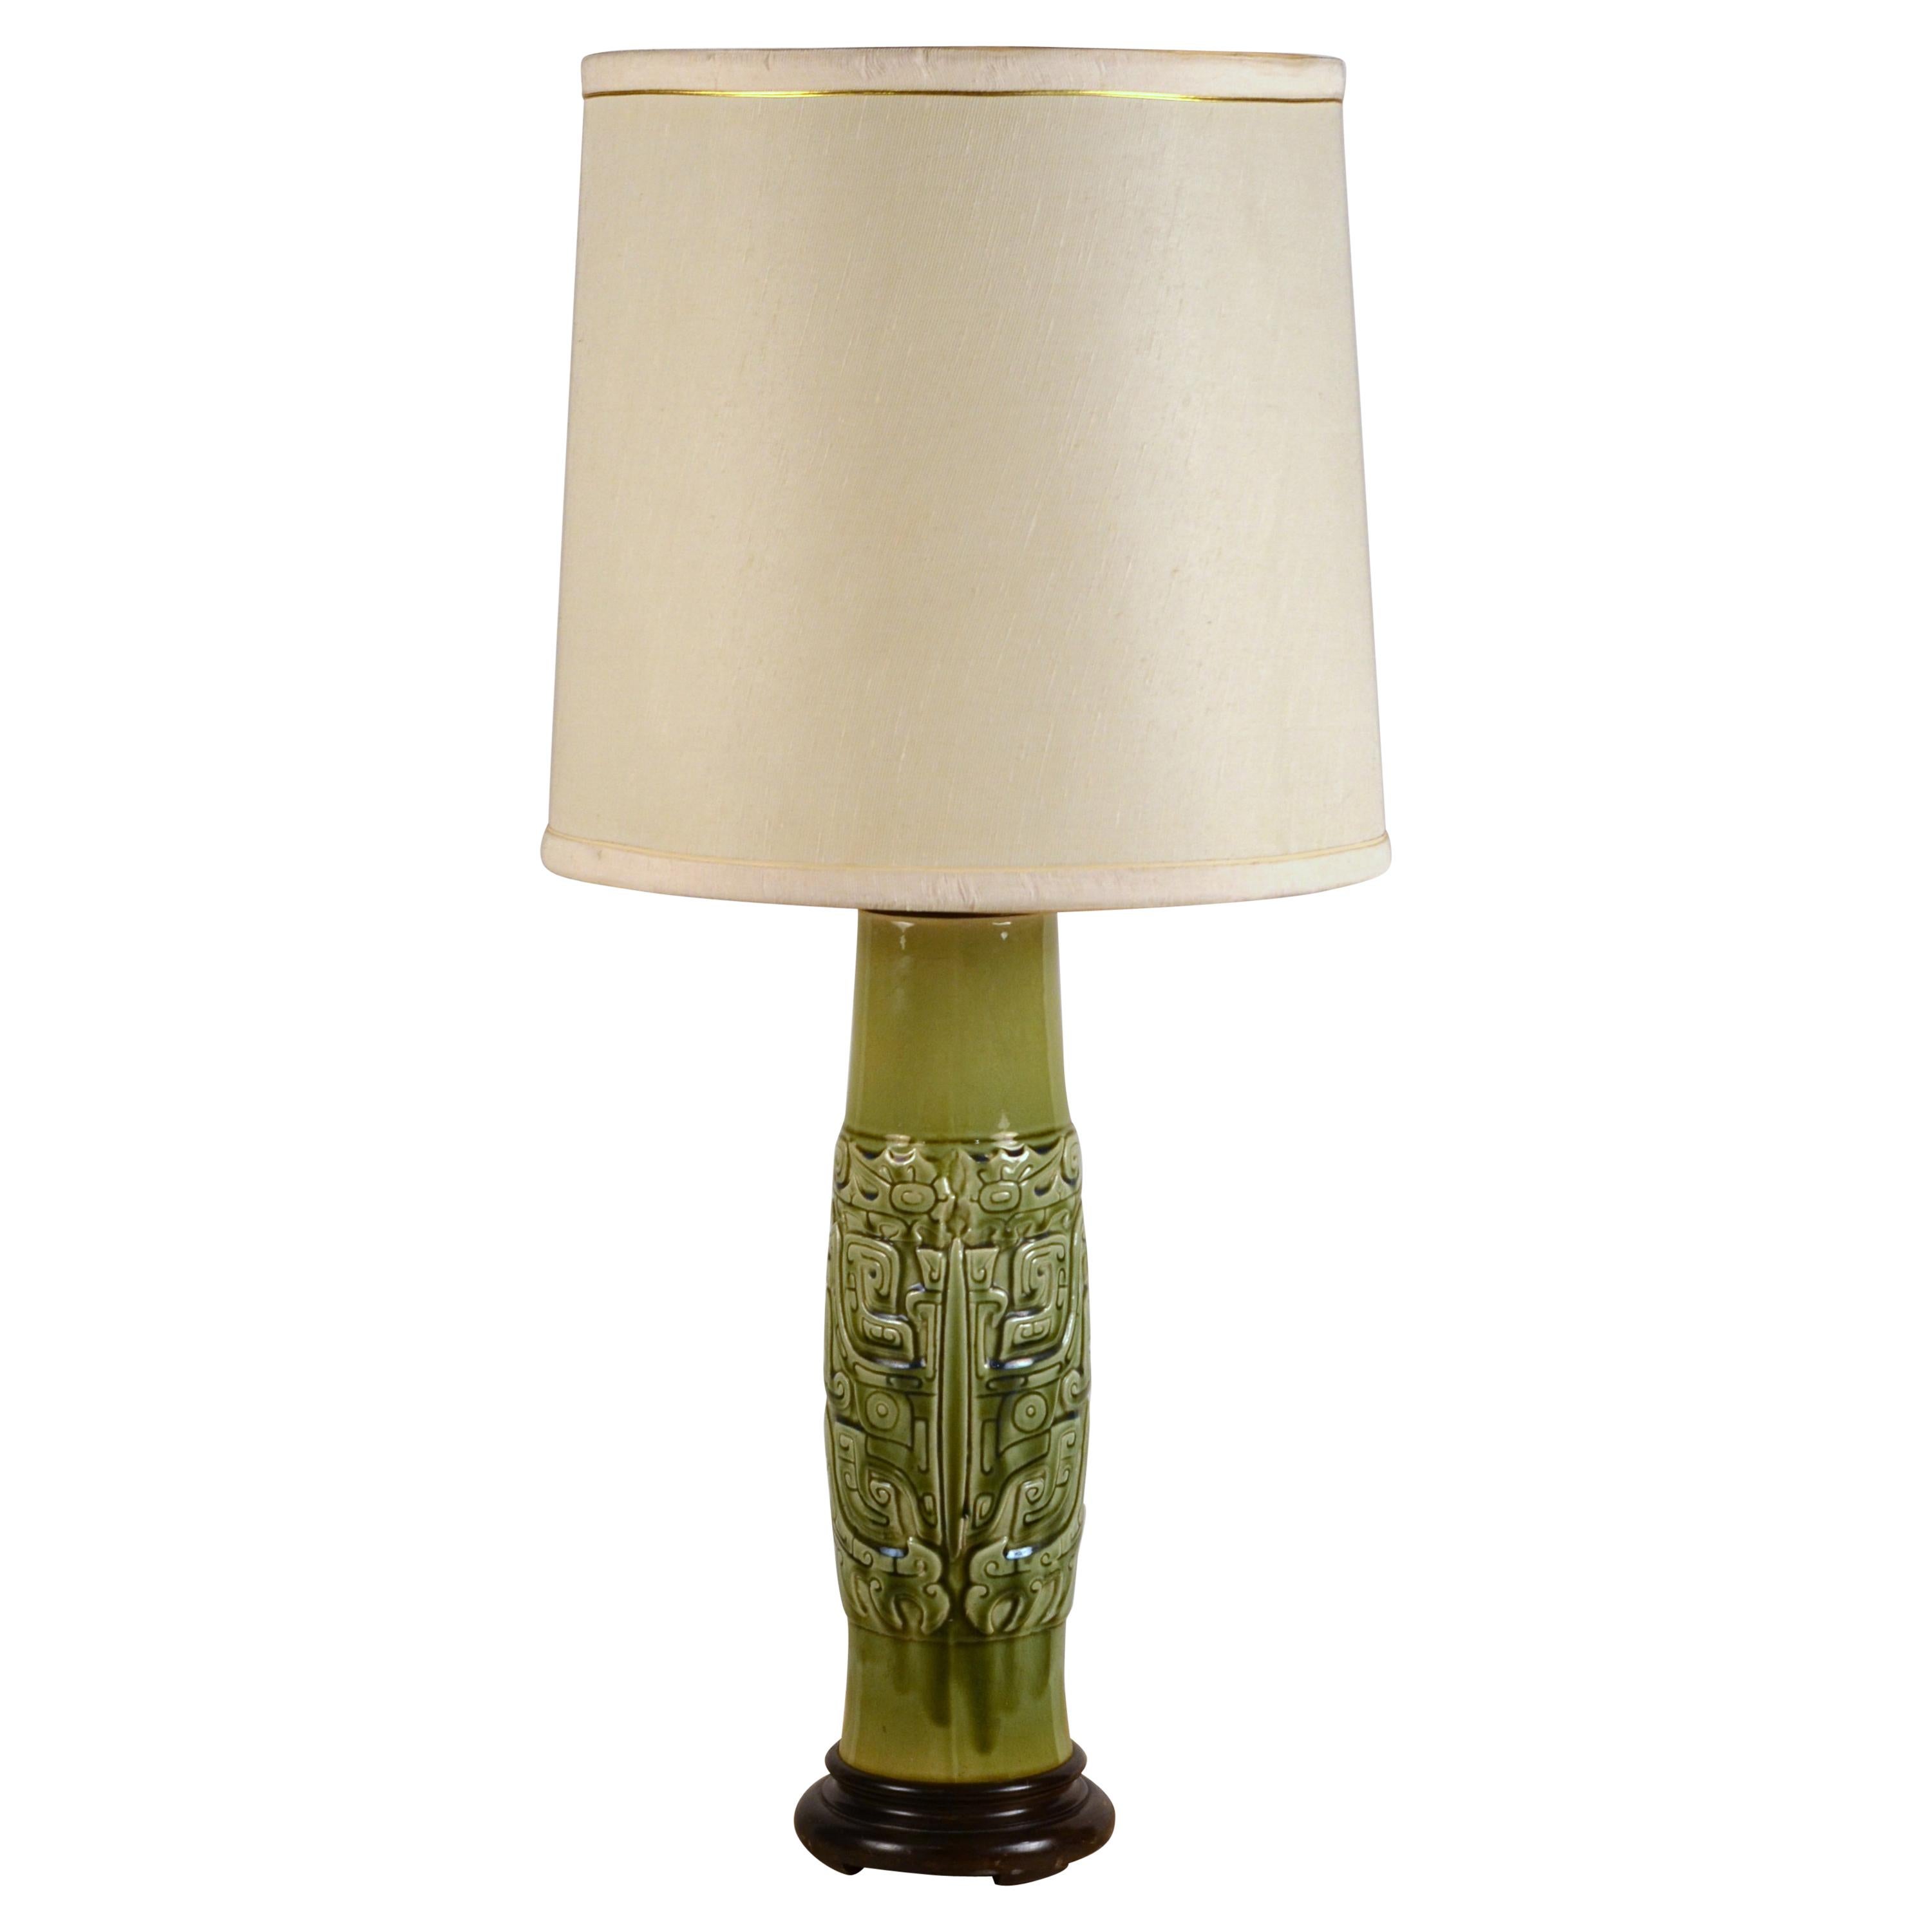 Elegant Mayan Inspired Ceramic Lamp with Original Shade For Sale